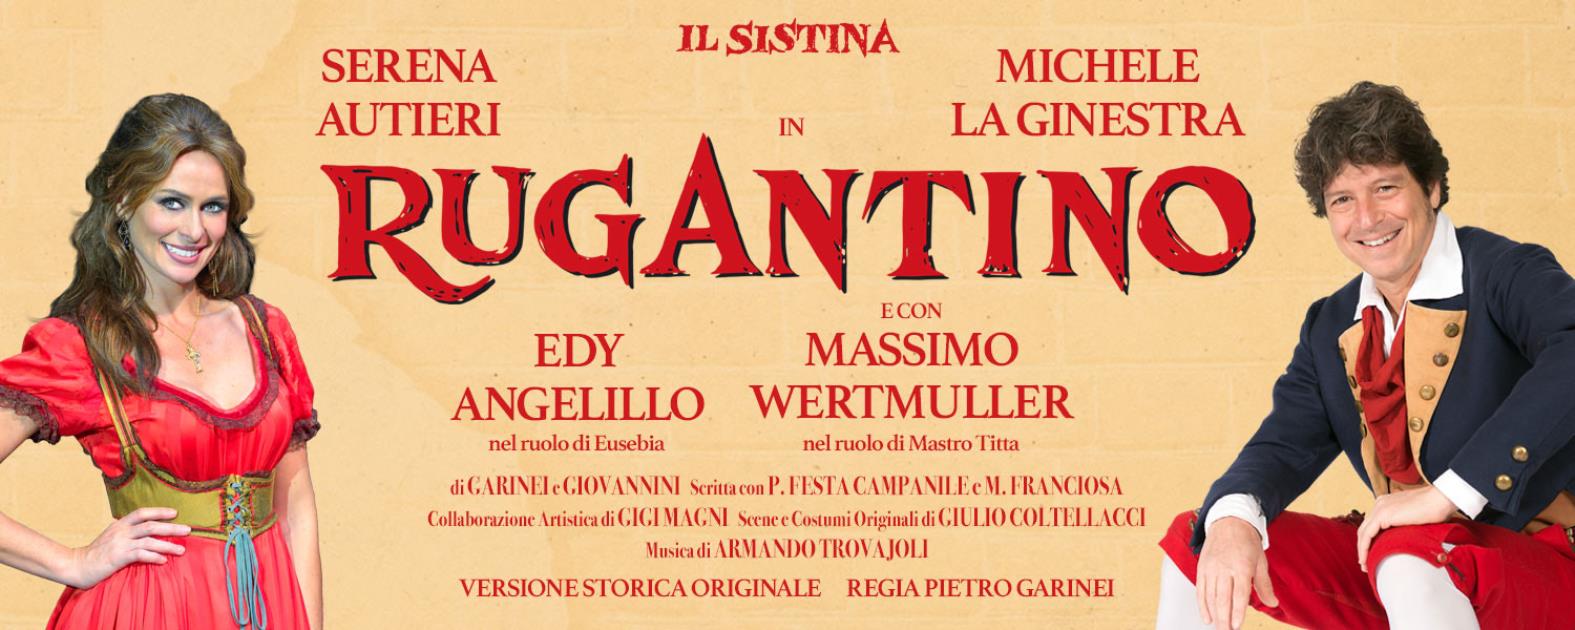 Michele La Ginestra è 'Rugantino' al Teatro Sistina dal 10 marzo. Con lui Edy Angelillo